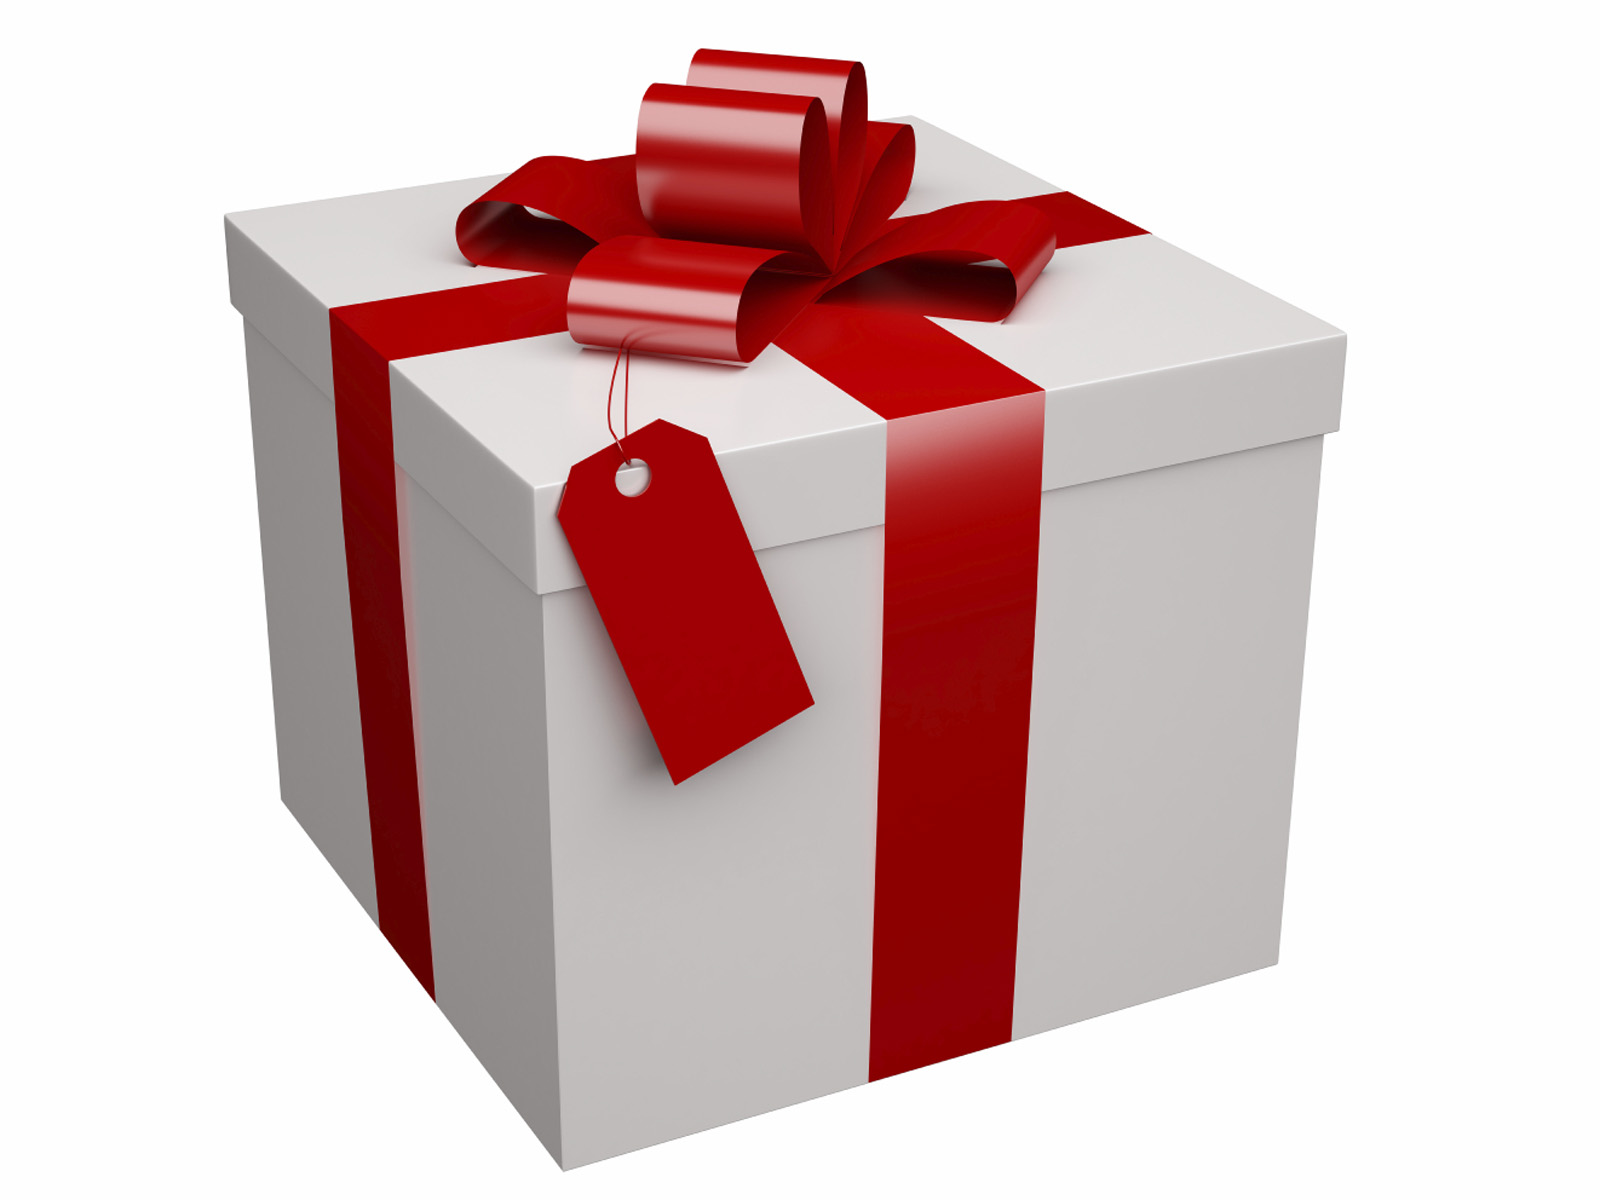 http://www.bankersadvertising.com/blog/wp-content/uploads/2014/09/gift-white-red-ribbon.jpg